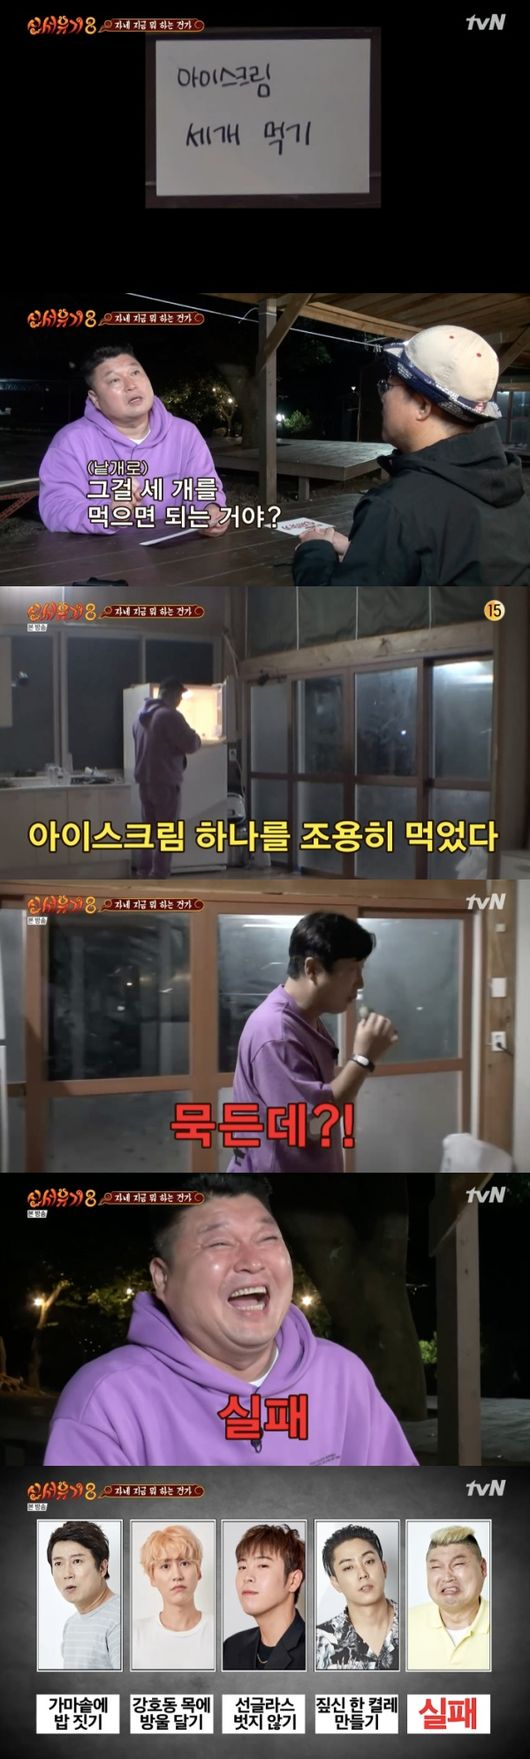 [사진=tvN 방송화면] '신서유기8'에서 강호동이 기상 미션 시작도 전에 실패하는 시리즈 초유의 사태로 웃음을 자아냈다.